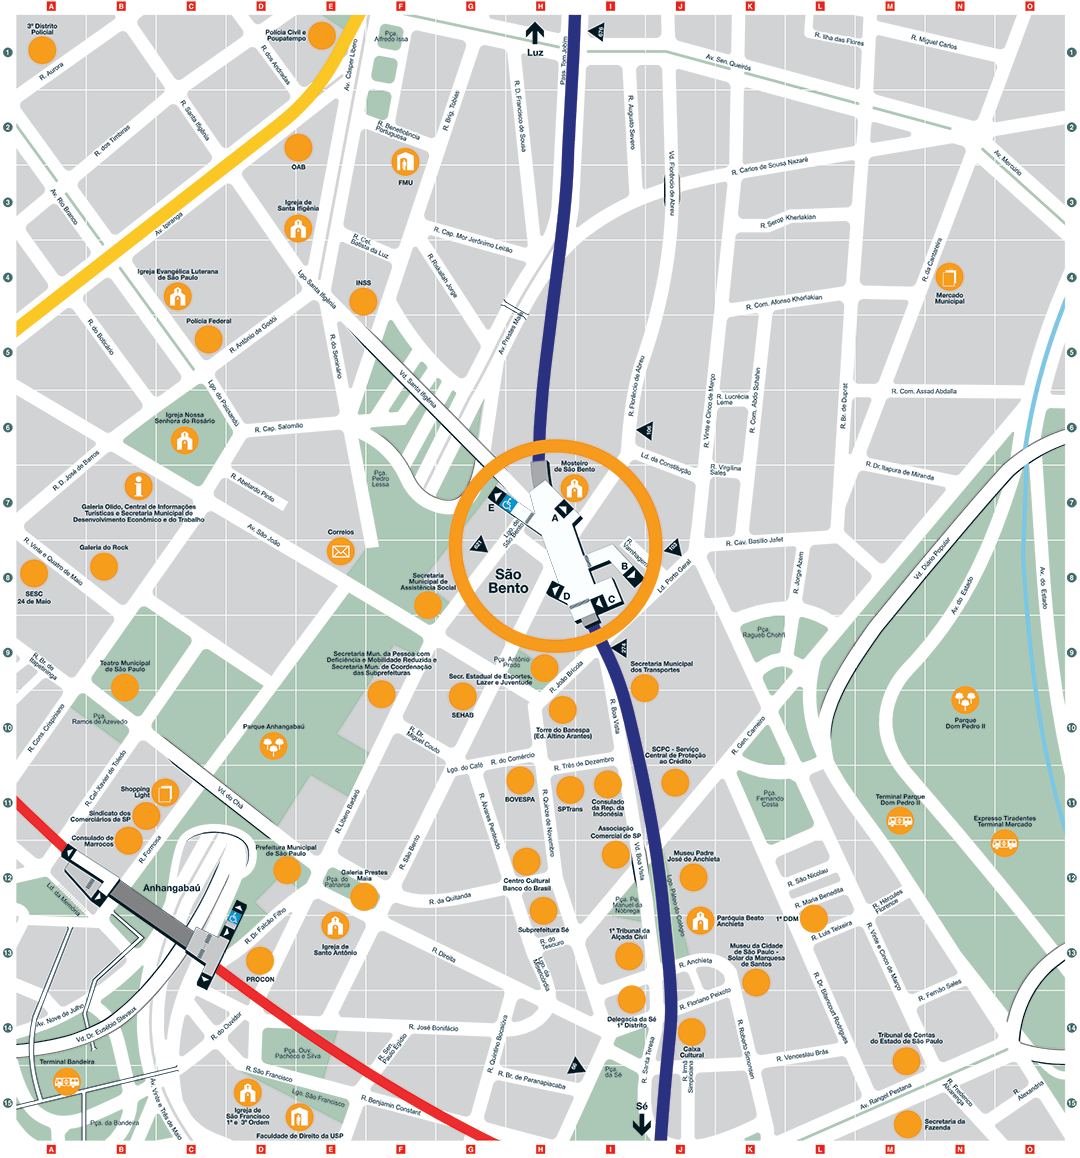 Mapa dos arredores da Estação São Bento